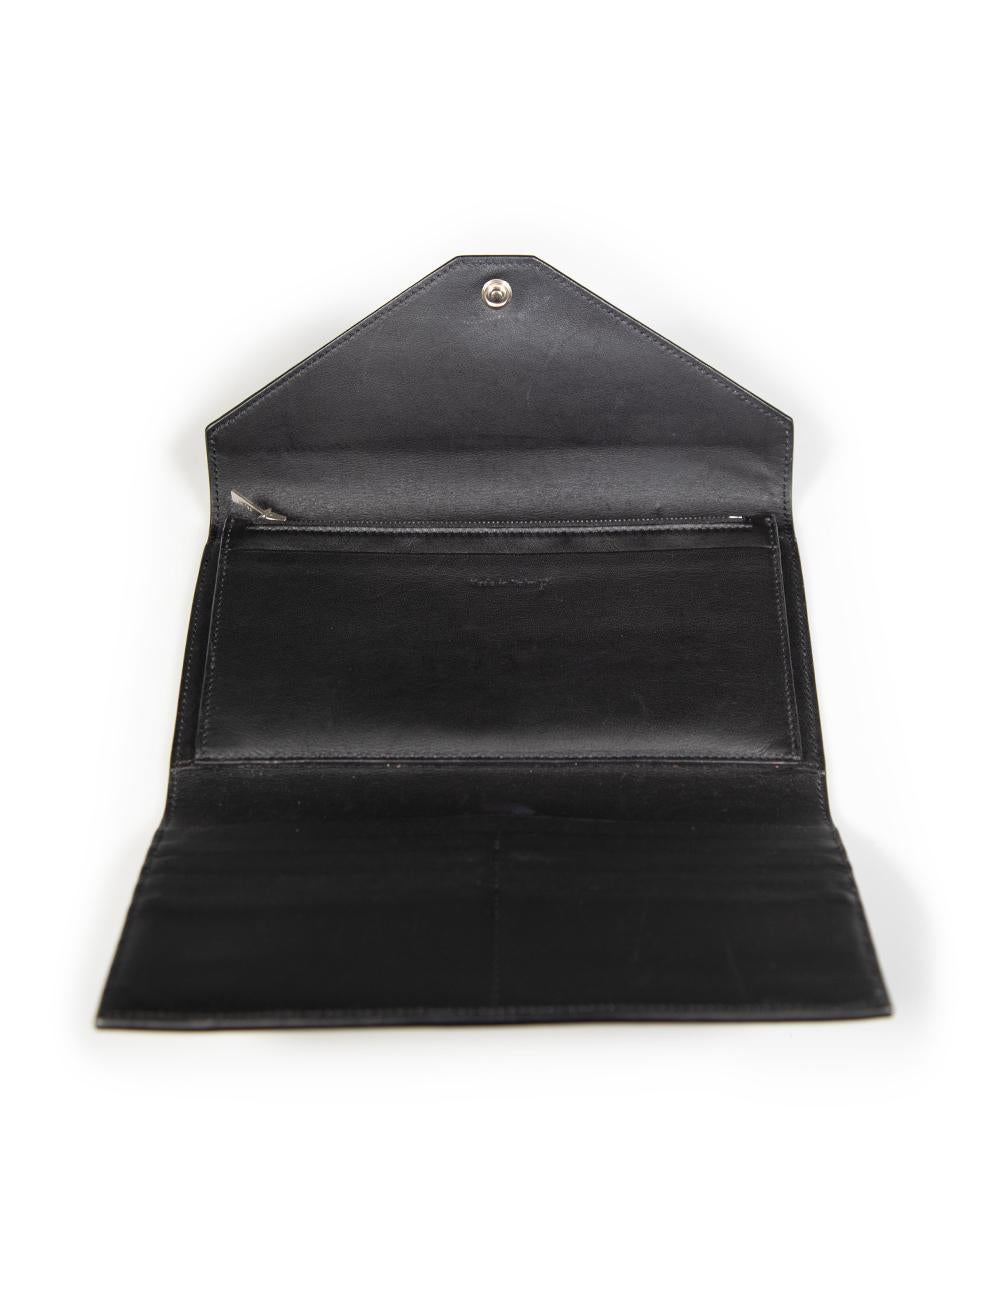 Céline Tricolor Leather Envelope Wallet For Sale 1